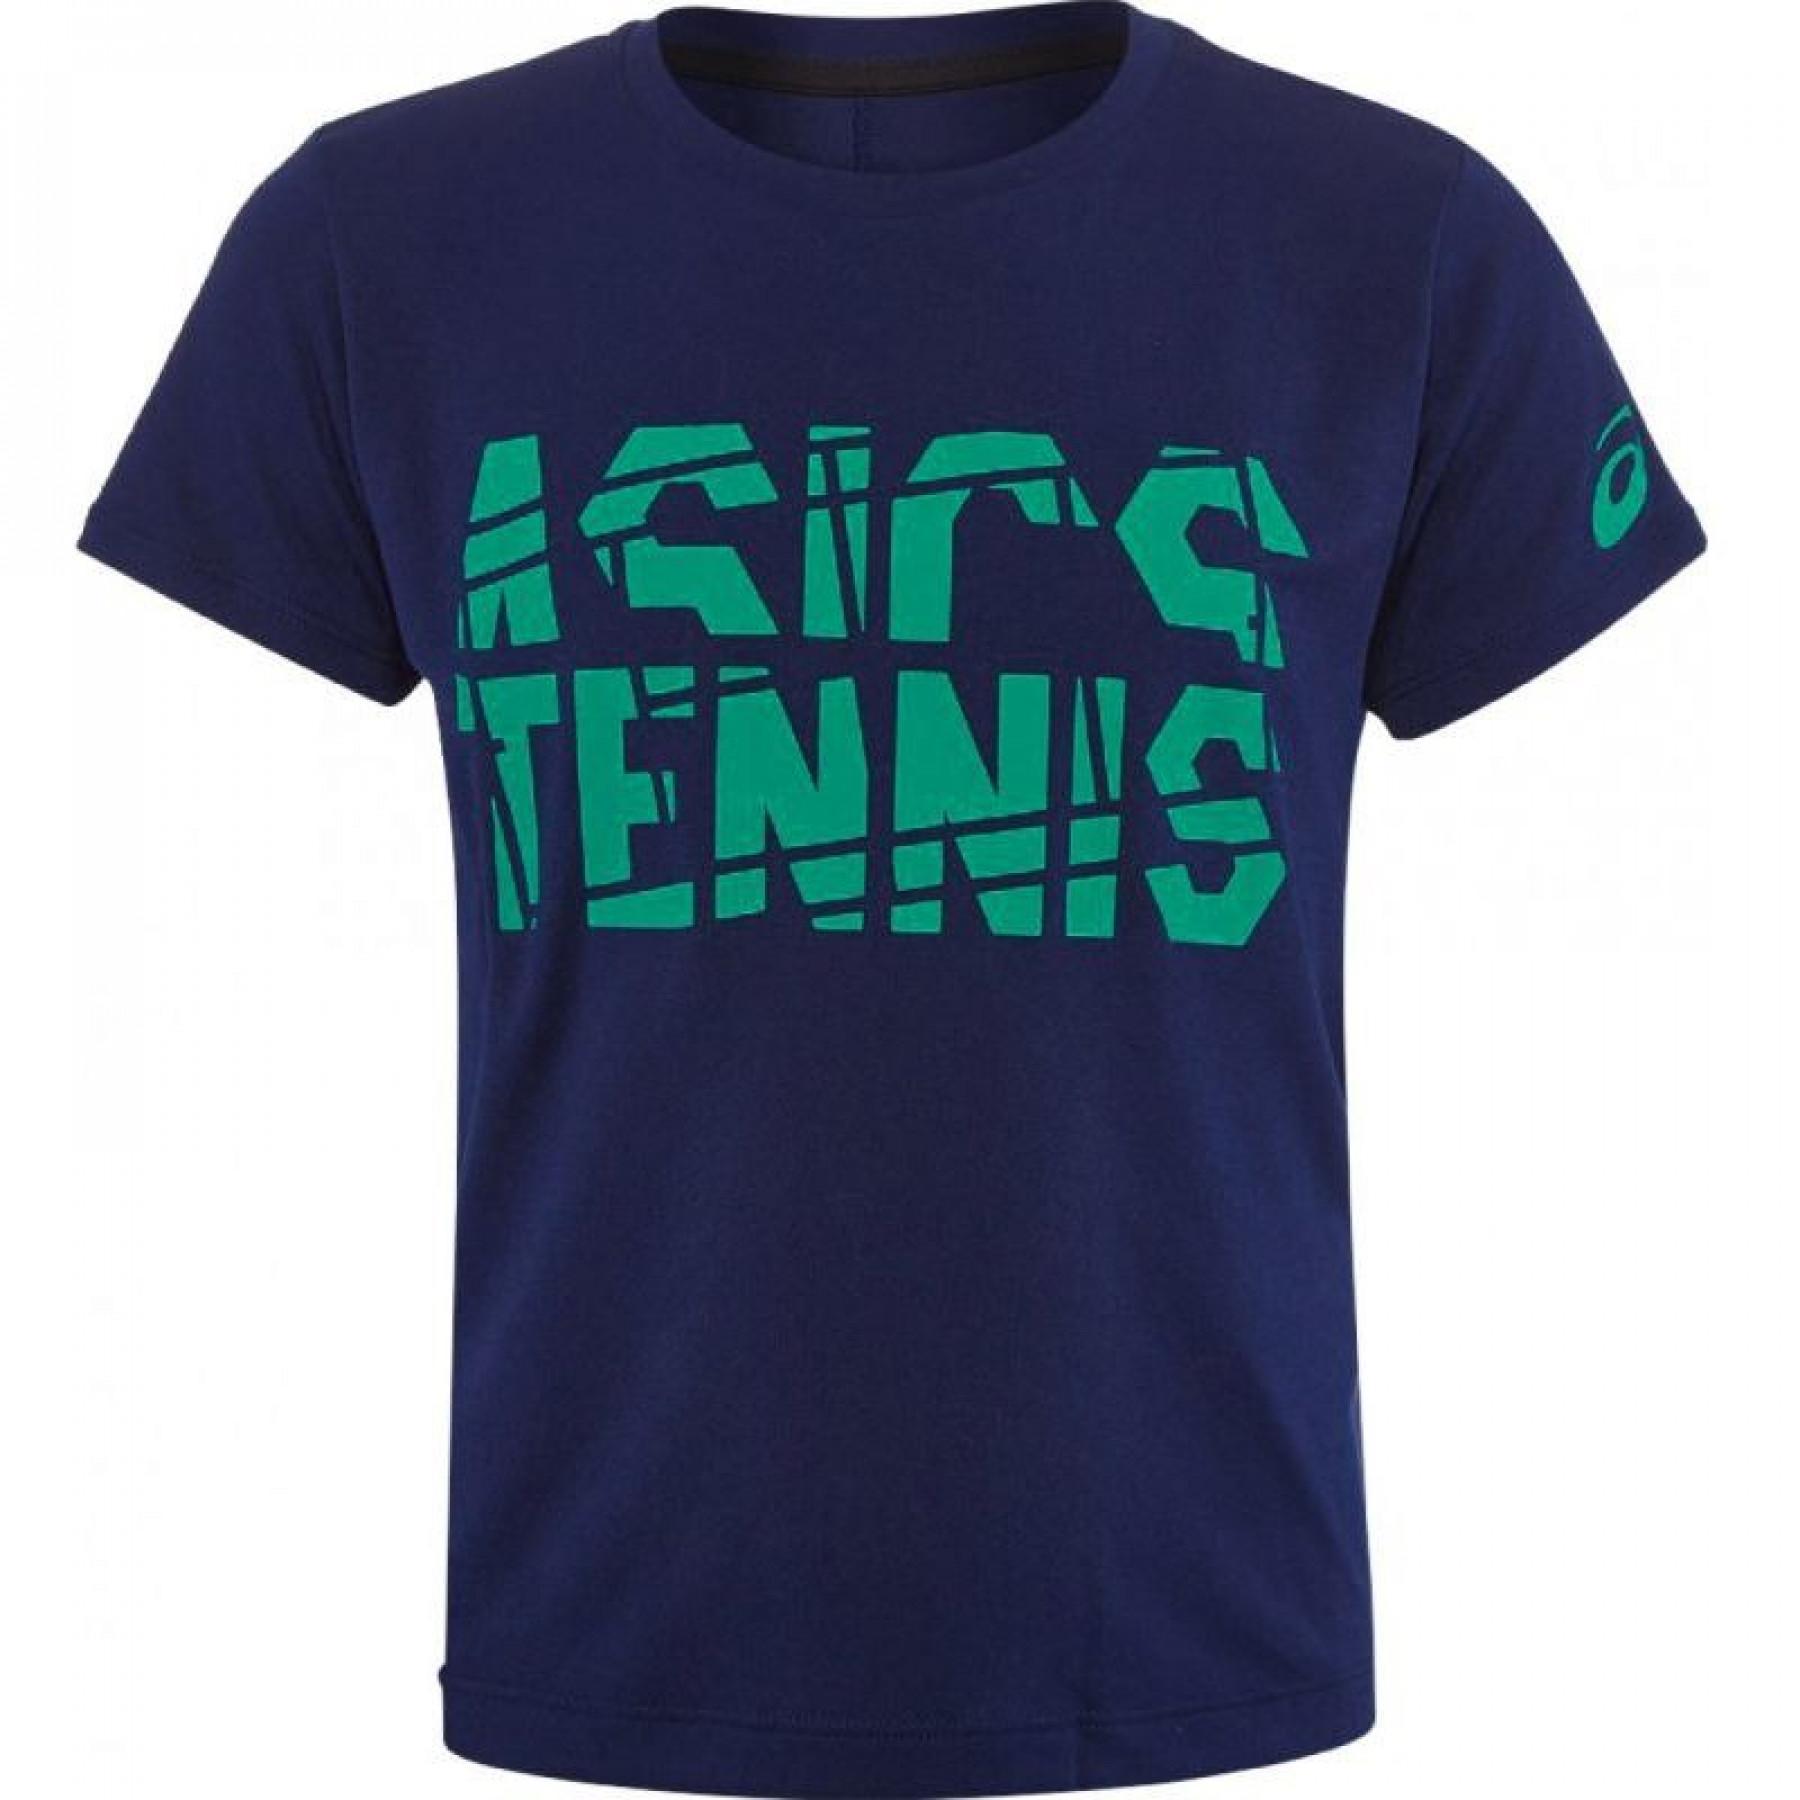 Camisola para crianças Asics tennis b Gpx